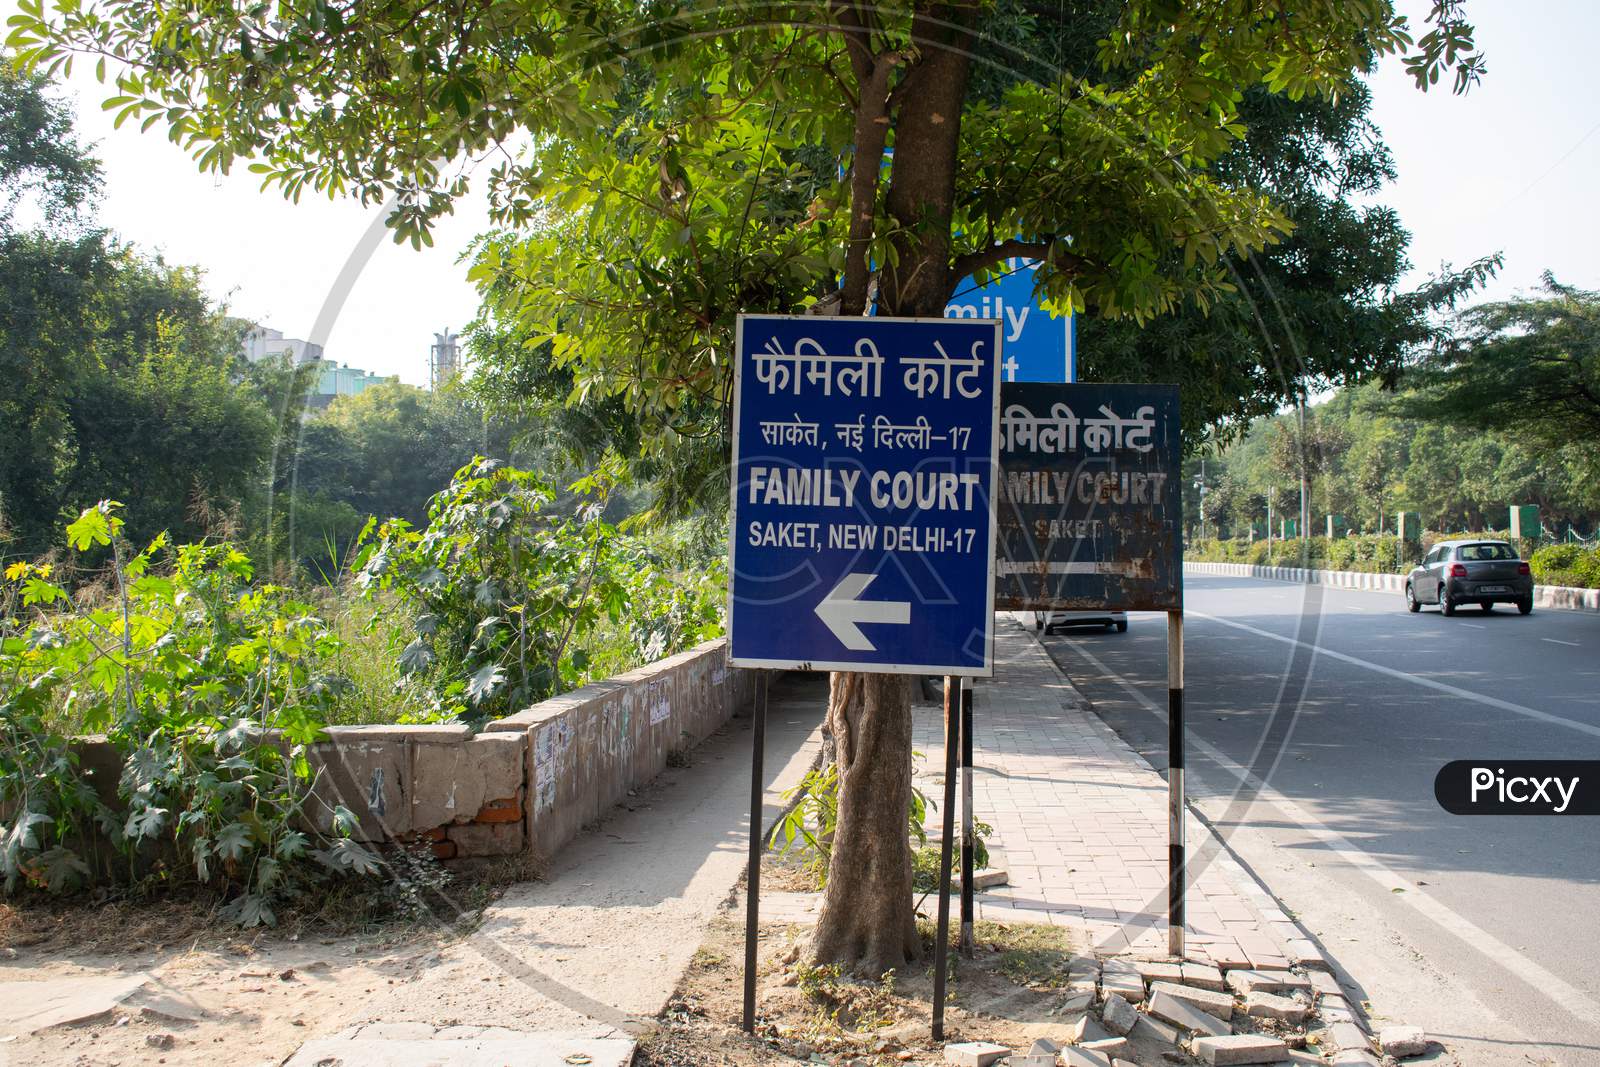 Sign board for Saket Family Court in Delhi